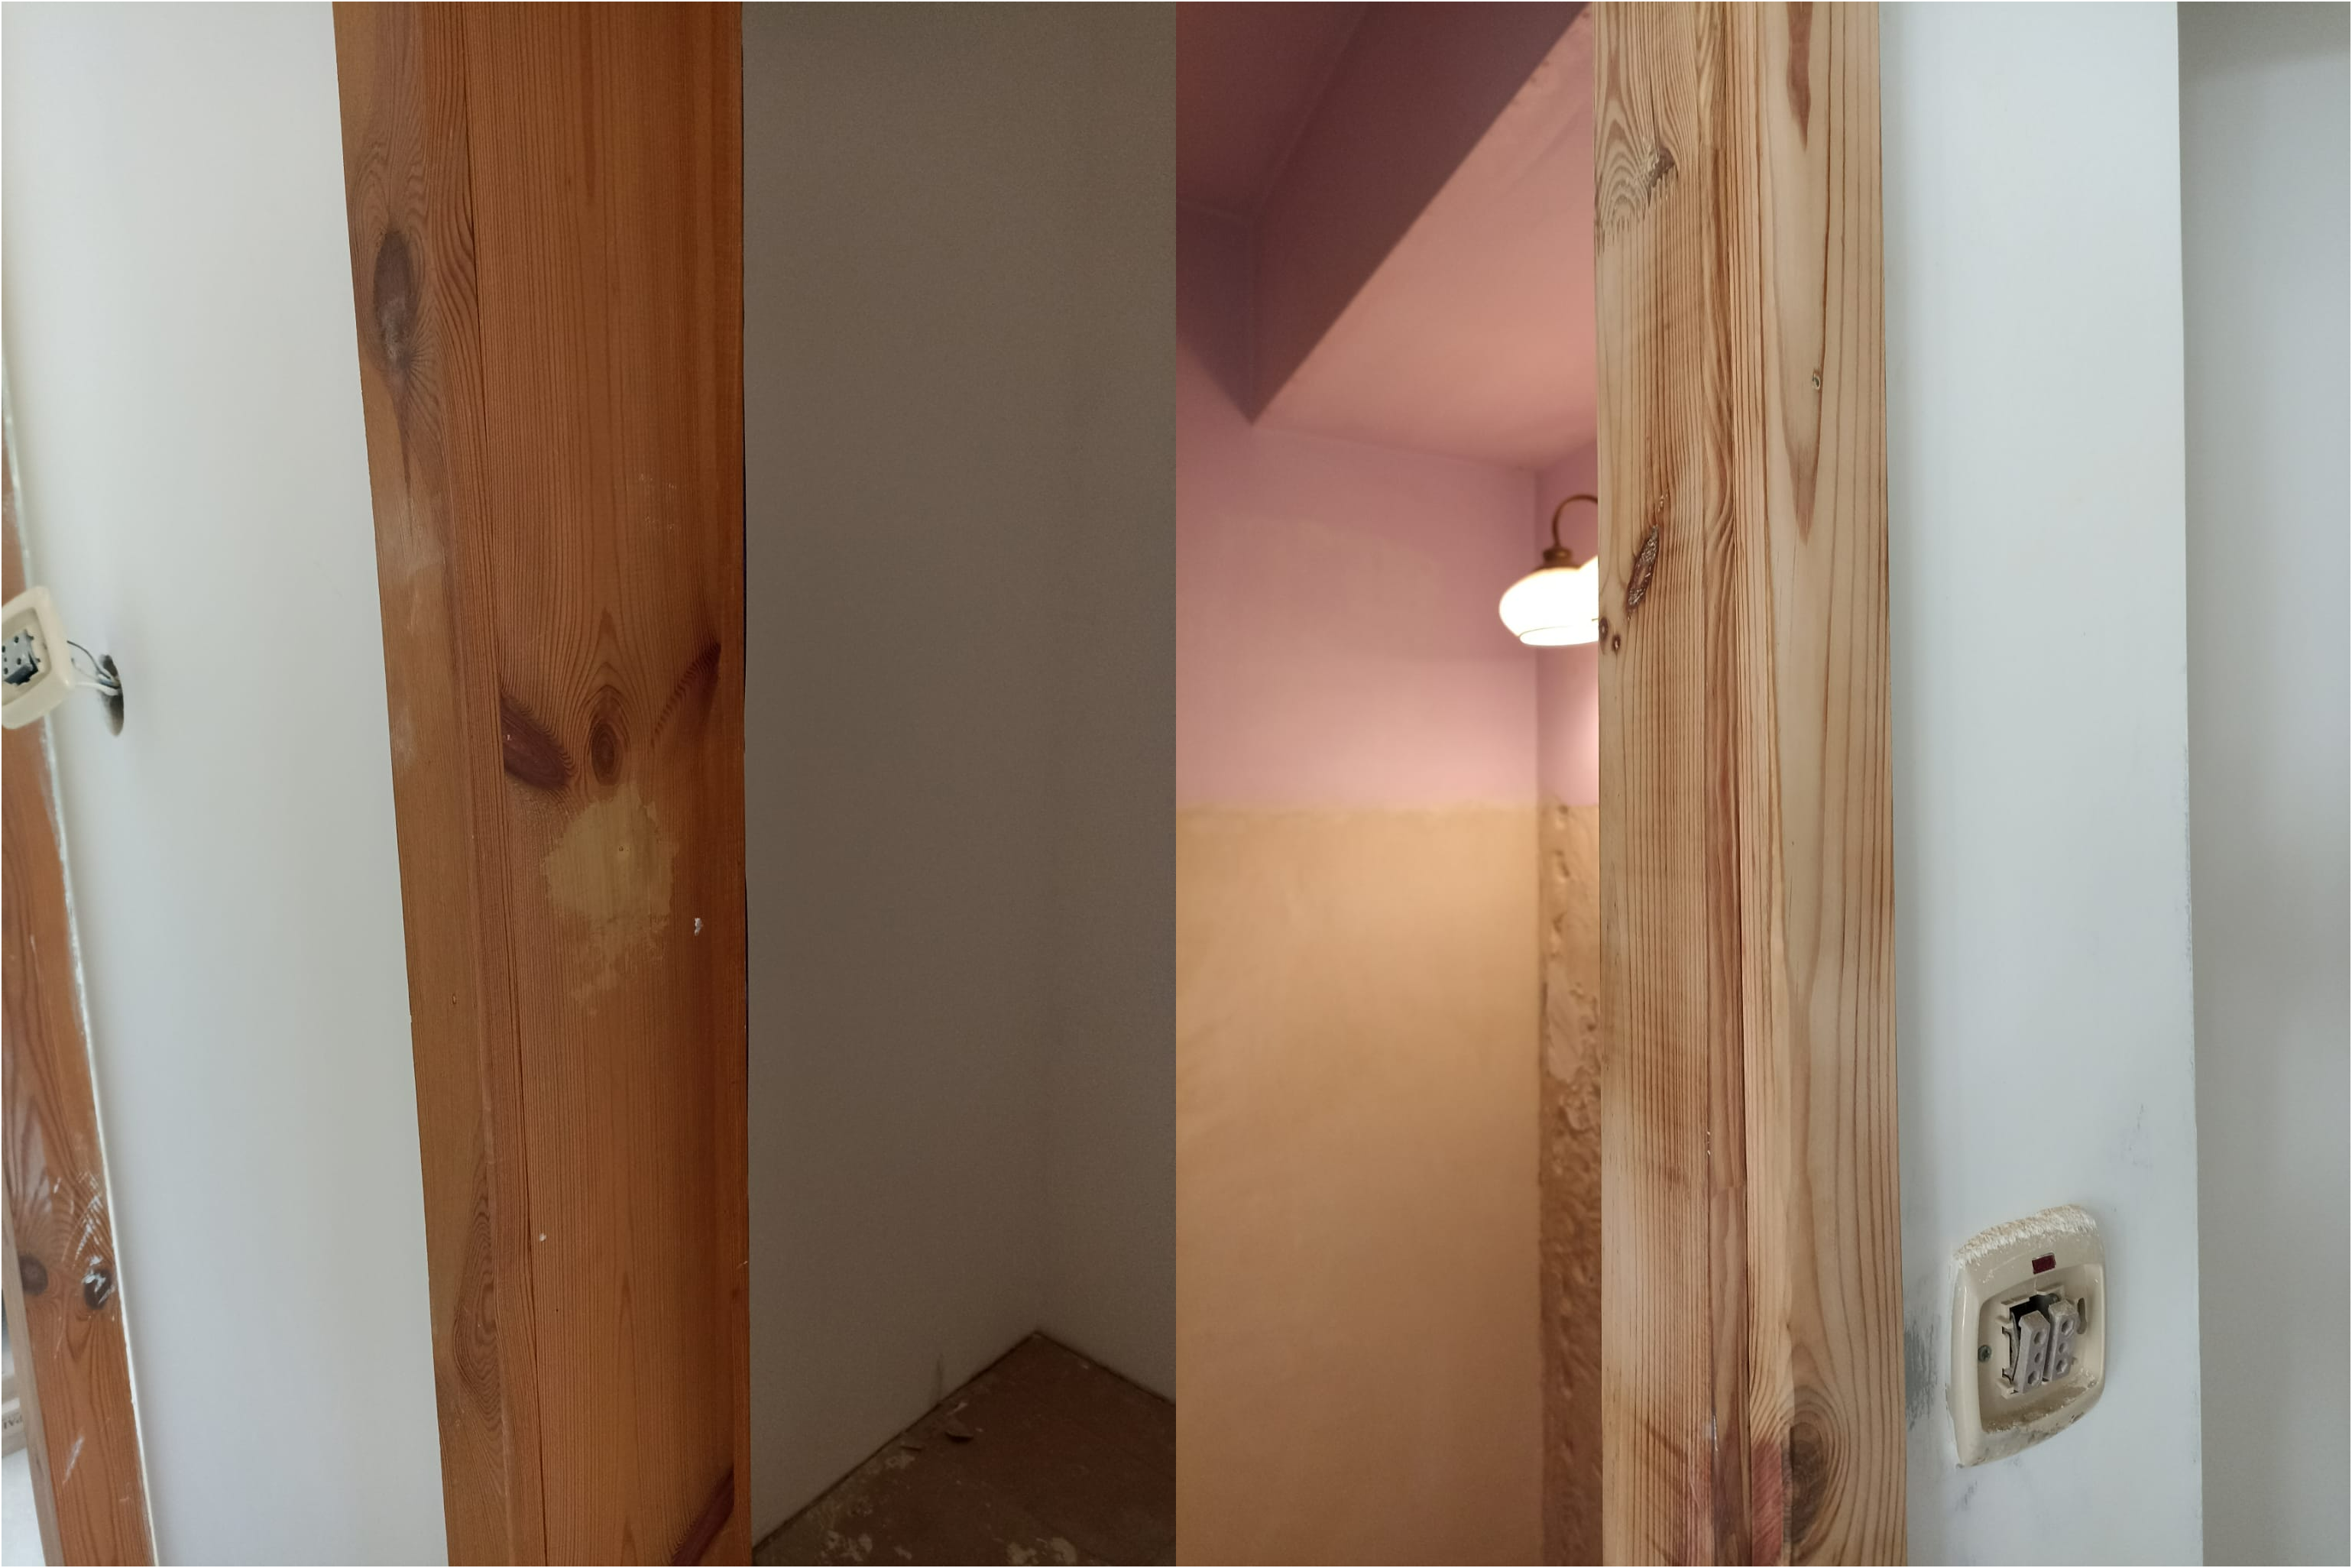 Dzieło współpracy „Pink Helmet” oraz dwóch zdolnych Panów. Renowacja drewnianych elementów w mieszkaniu – belek, okien, drzwi, ościeżnic. Prace zakładały zdjęcie starej powłoki, wypolerowanie drewna oraz na koniec olejowanie.